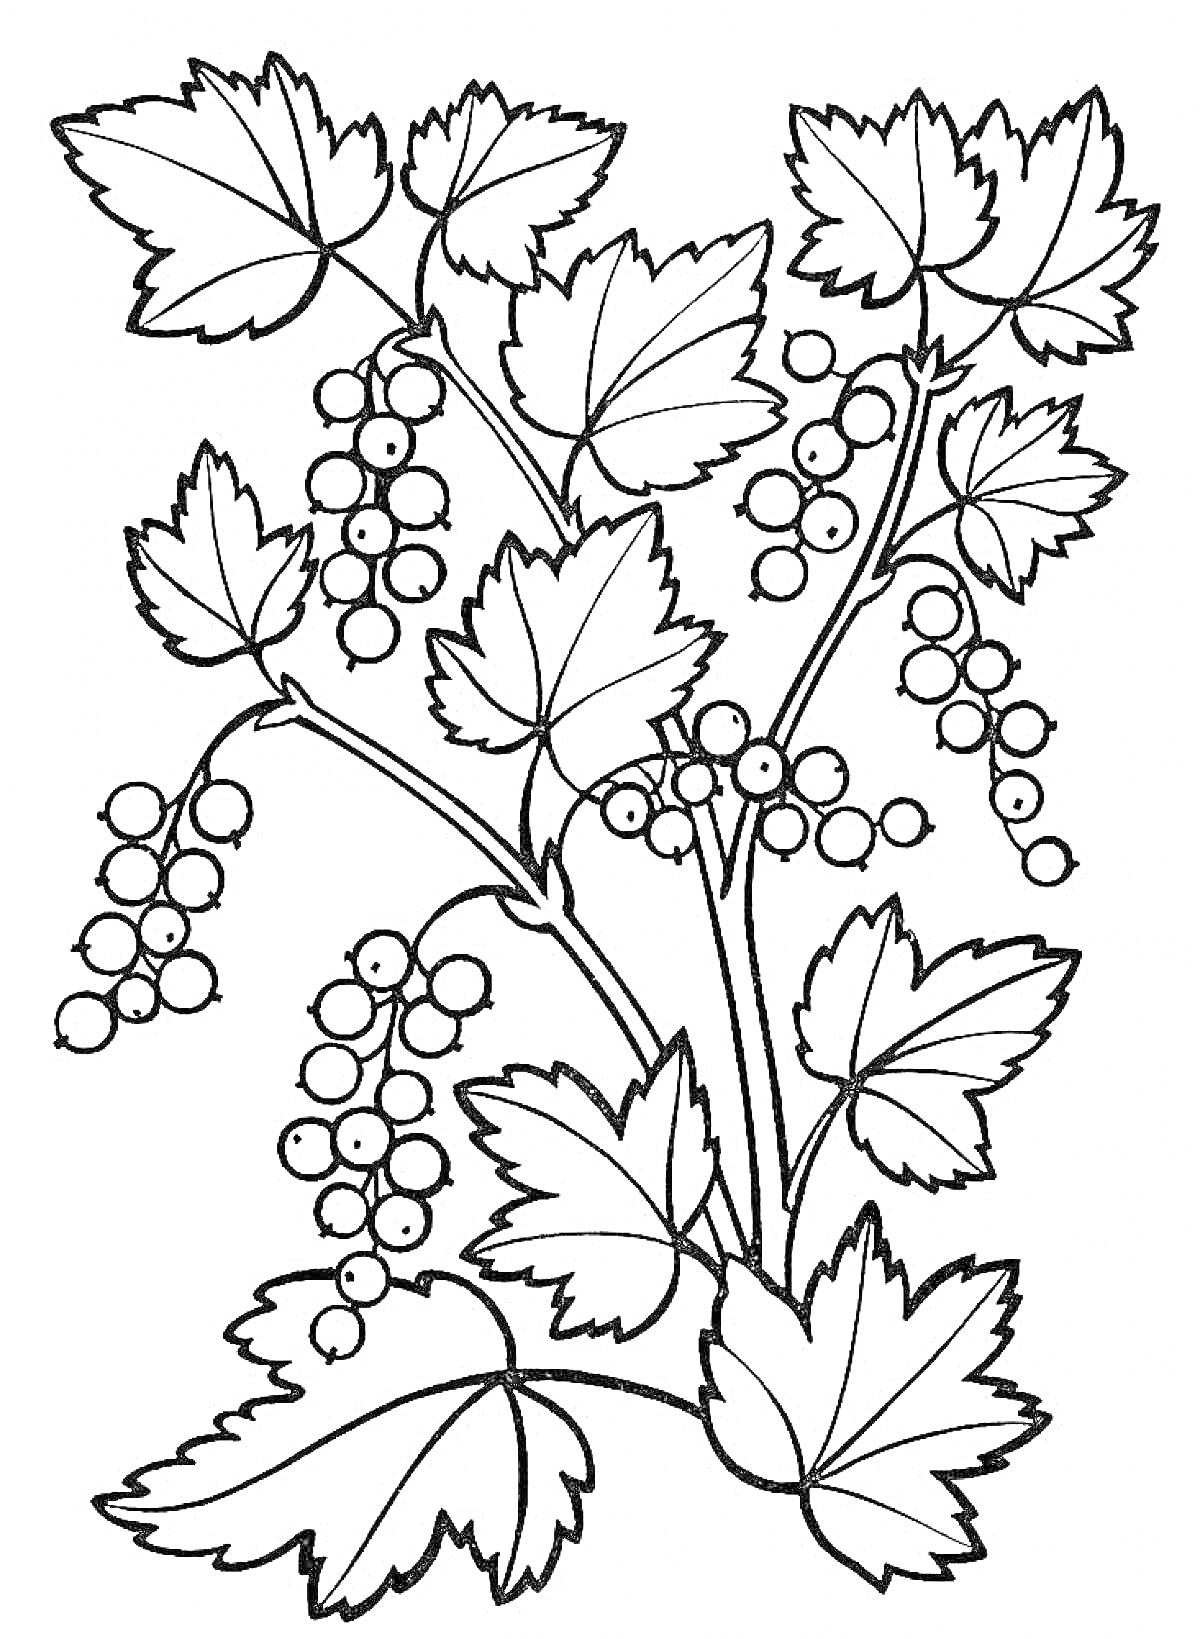 Раскраска Смородина с листьями и ягодами на ветке